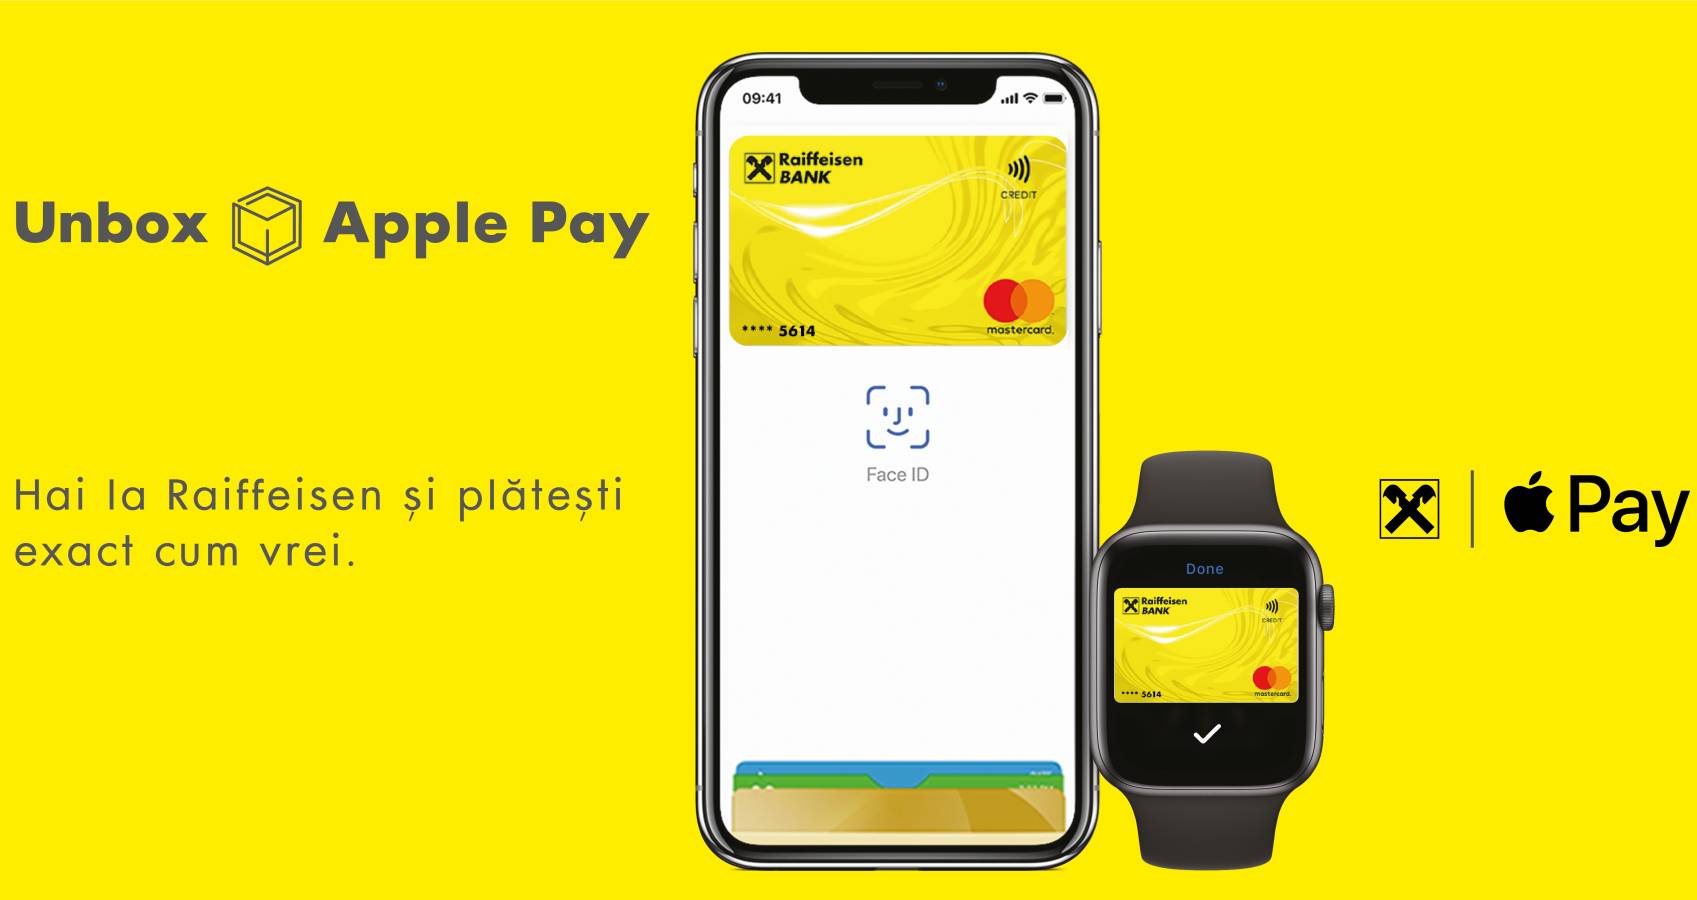 Banco Raiffeisen Apple Pay Rumania